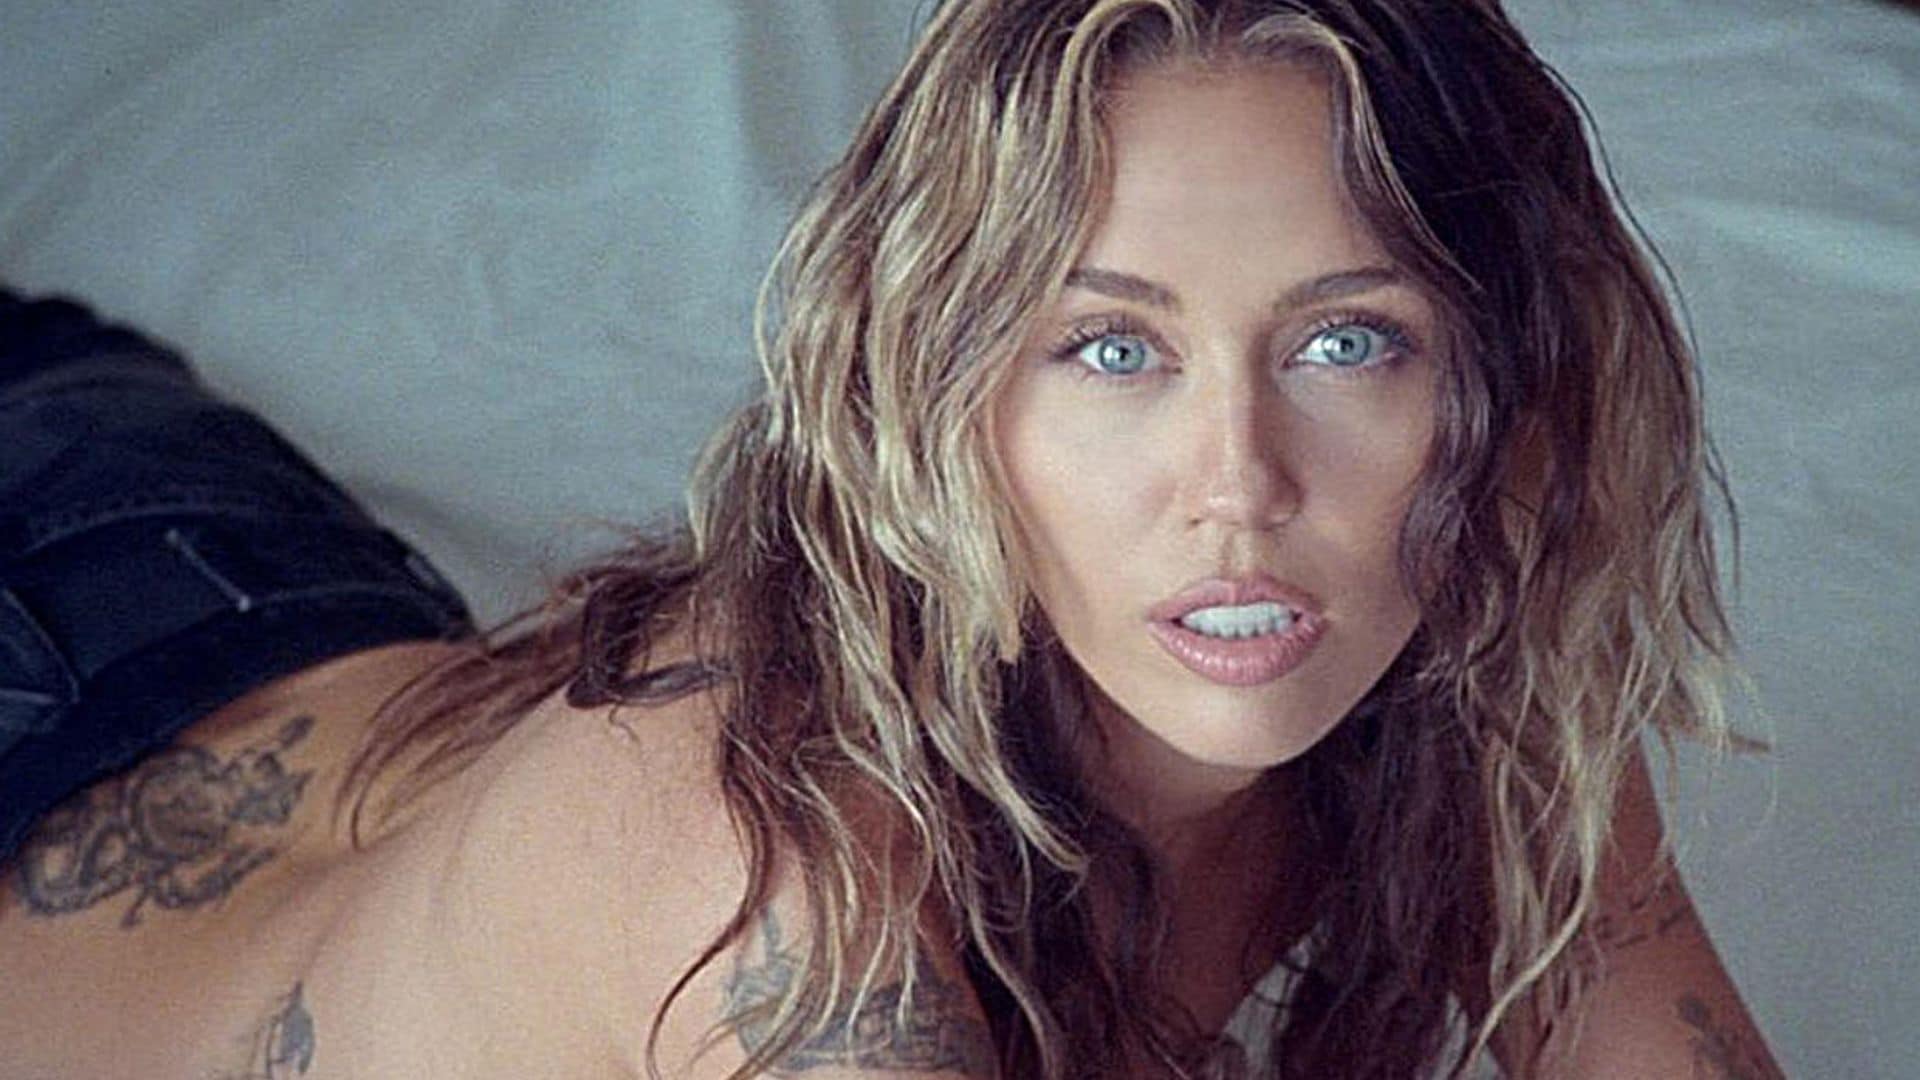 Copia el look más buscado de Miley Cyrus tras el éxito de su último videoclip, 'Jaded'